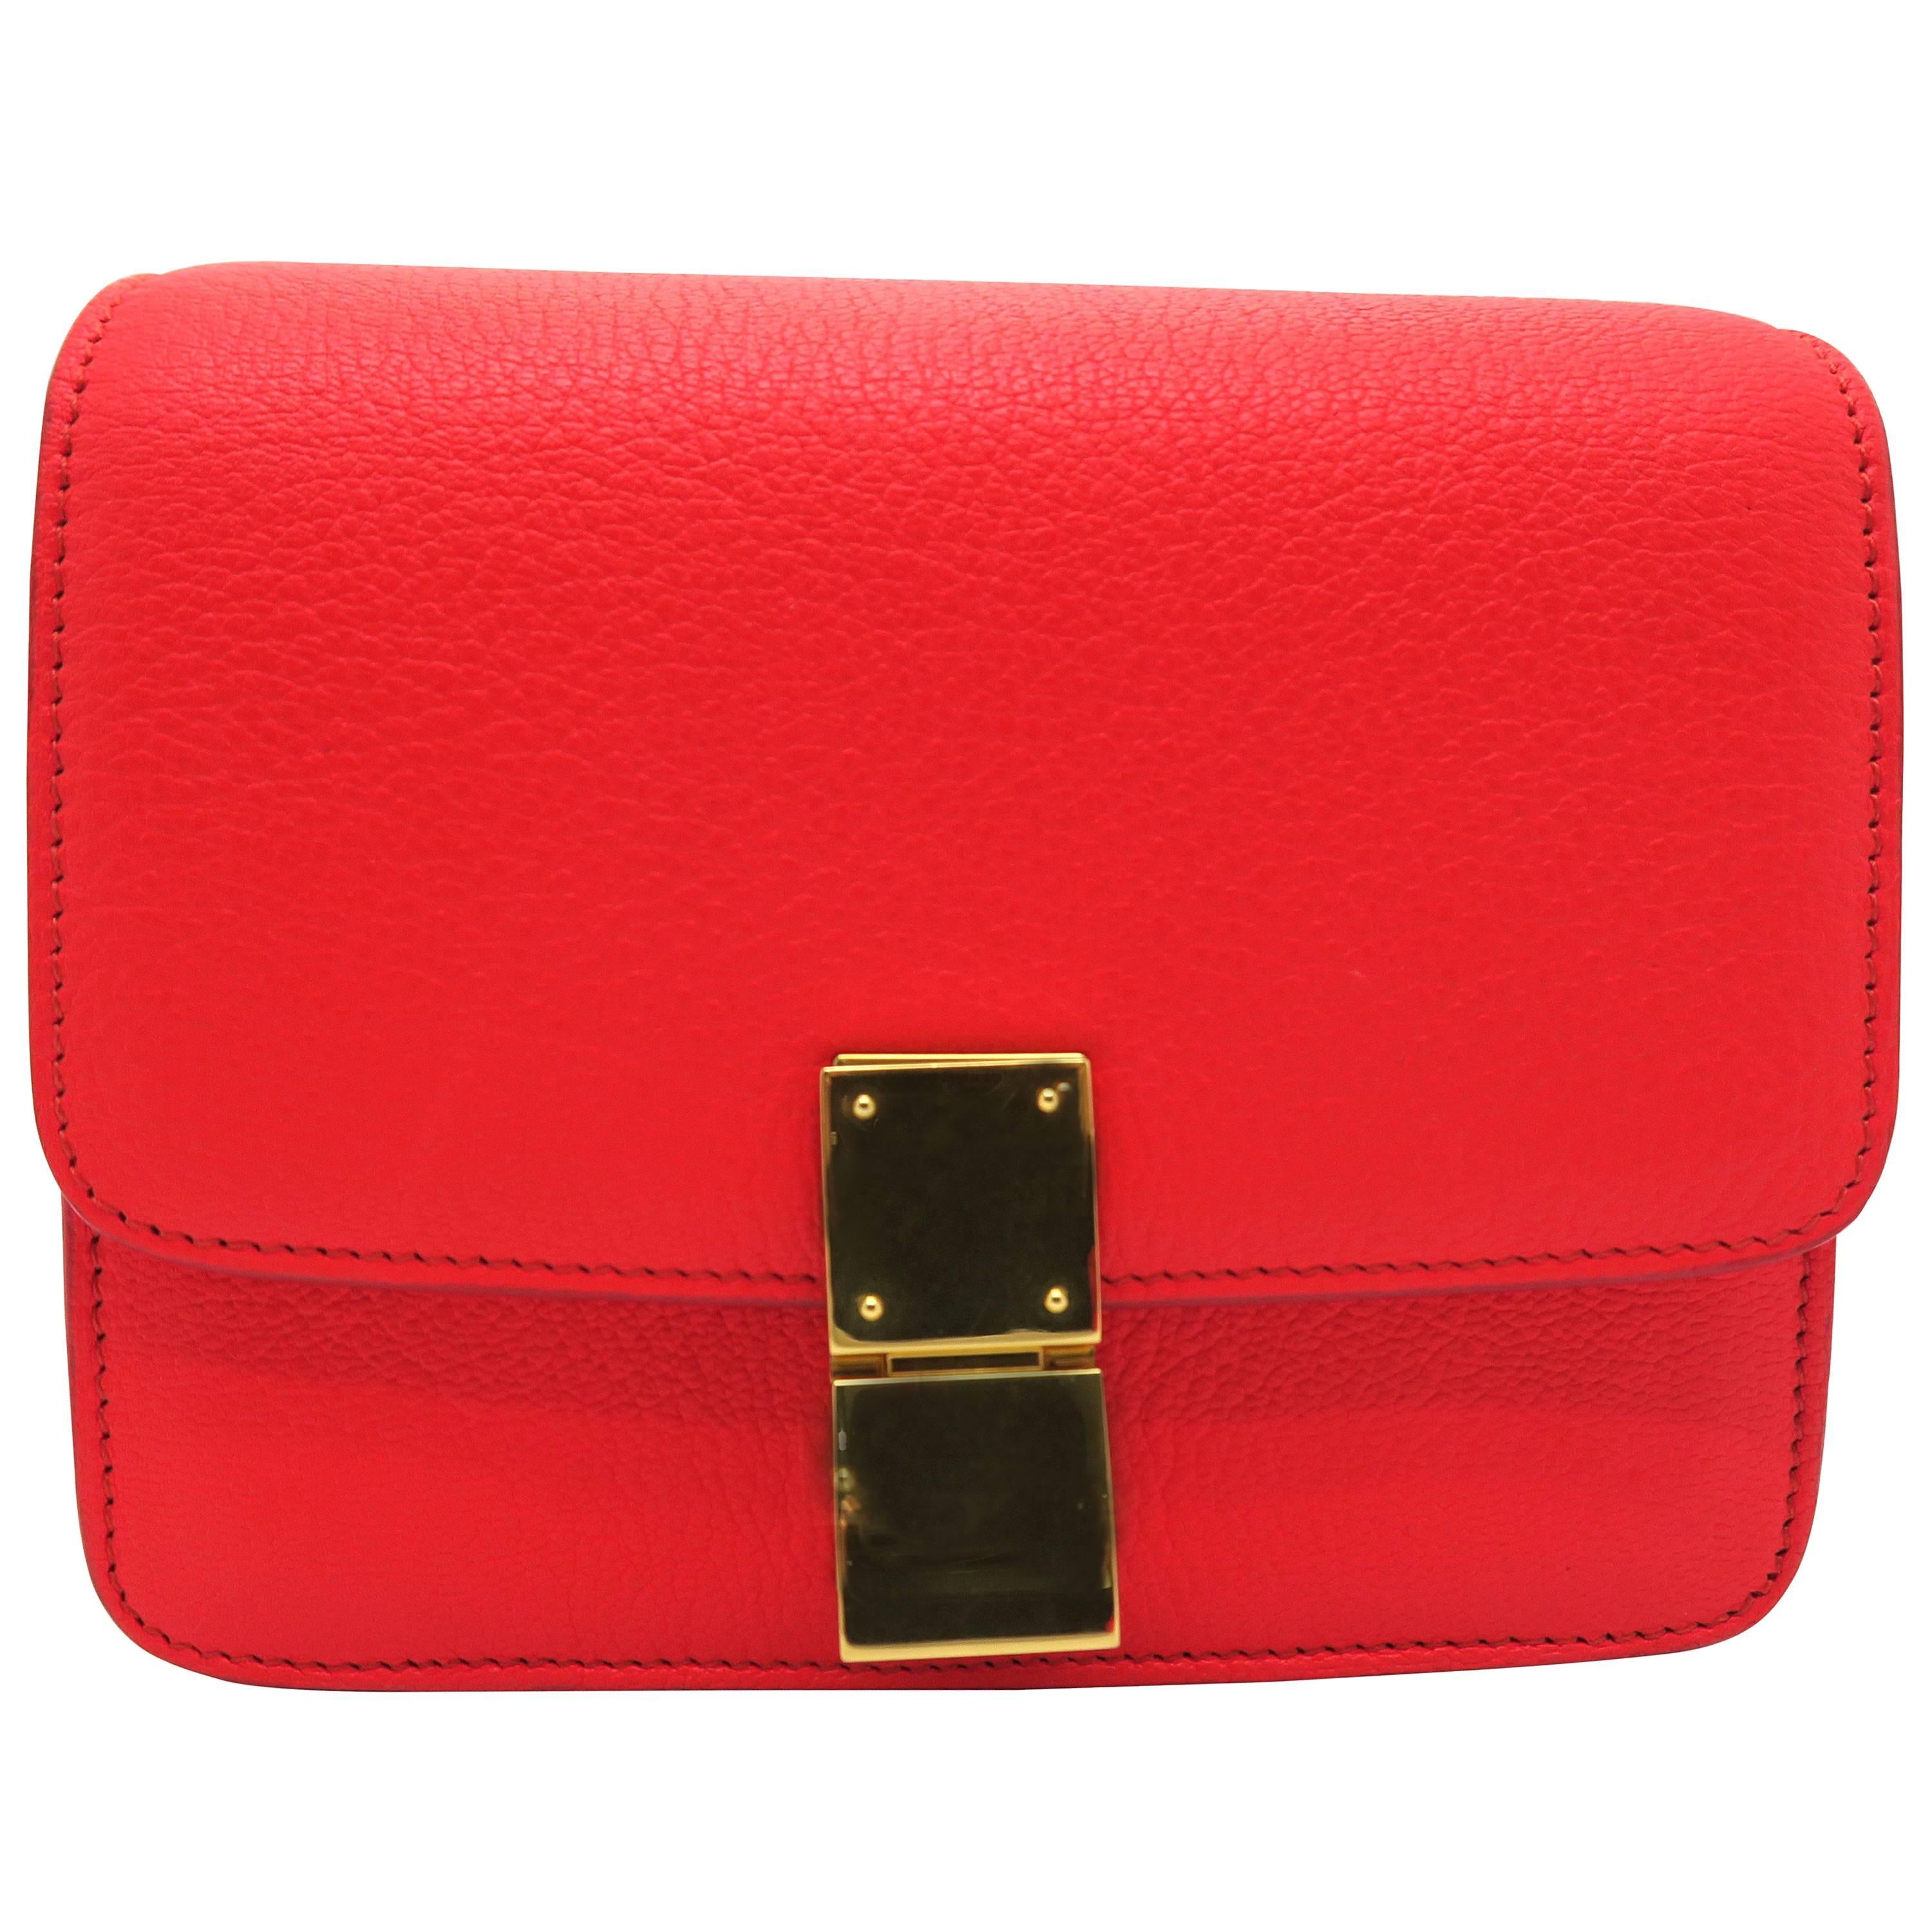 Celine Classic Box Red Calfskin Leather Shoulder Bag